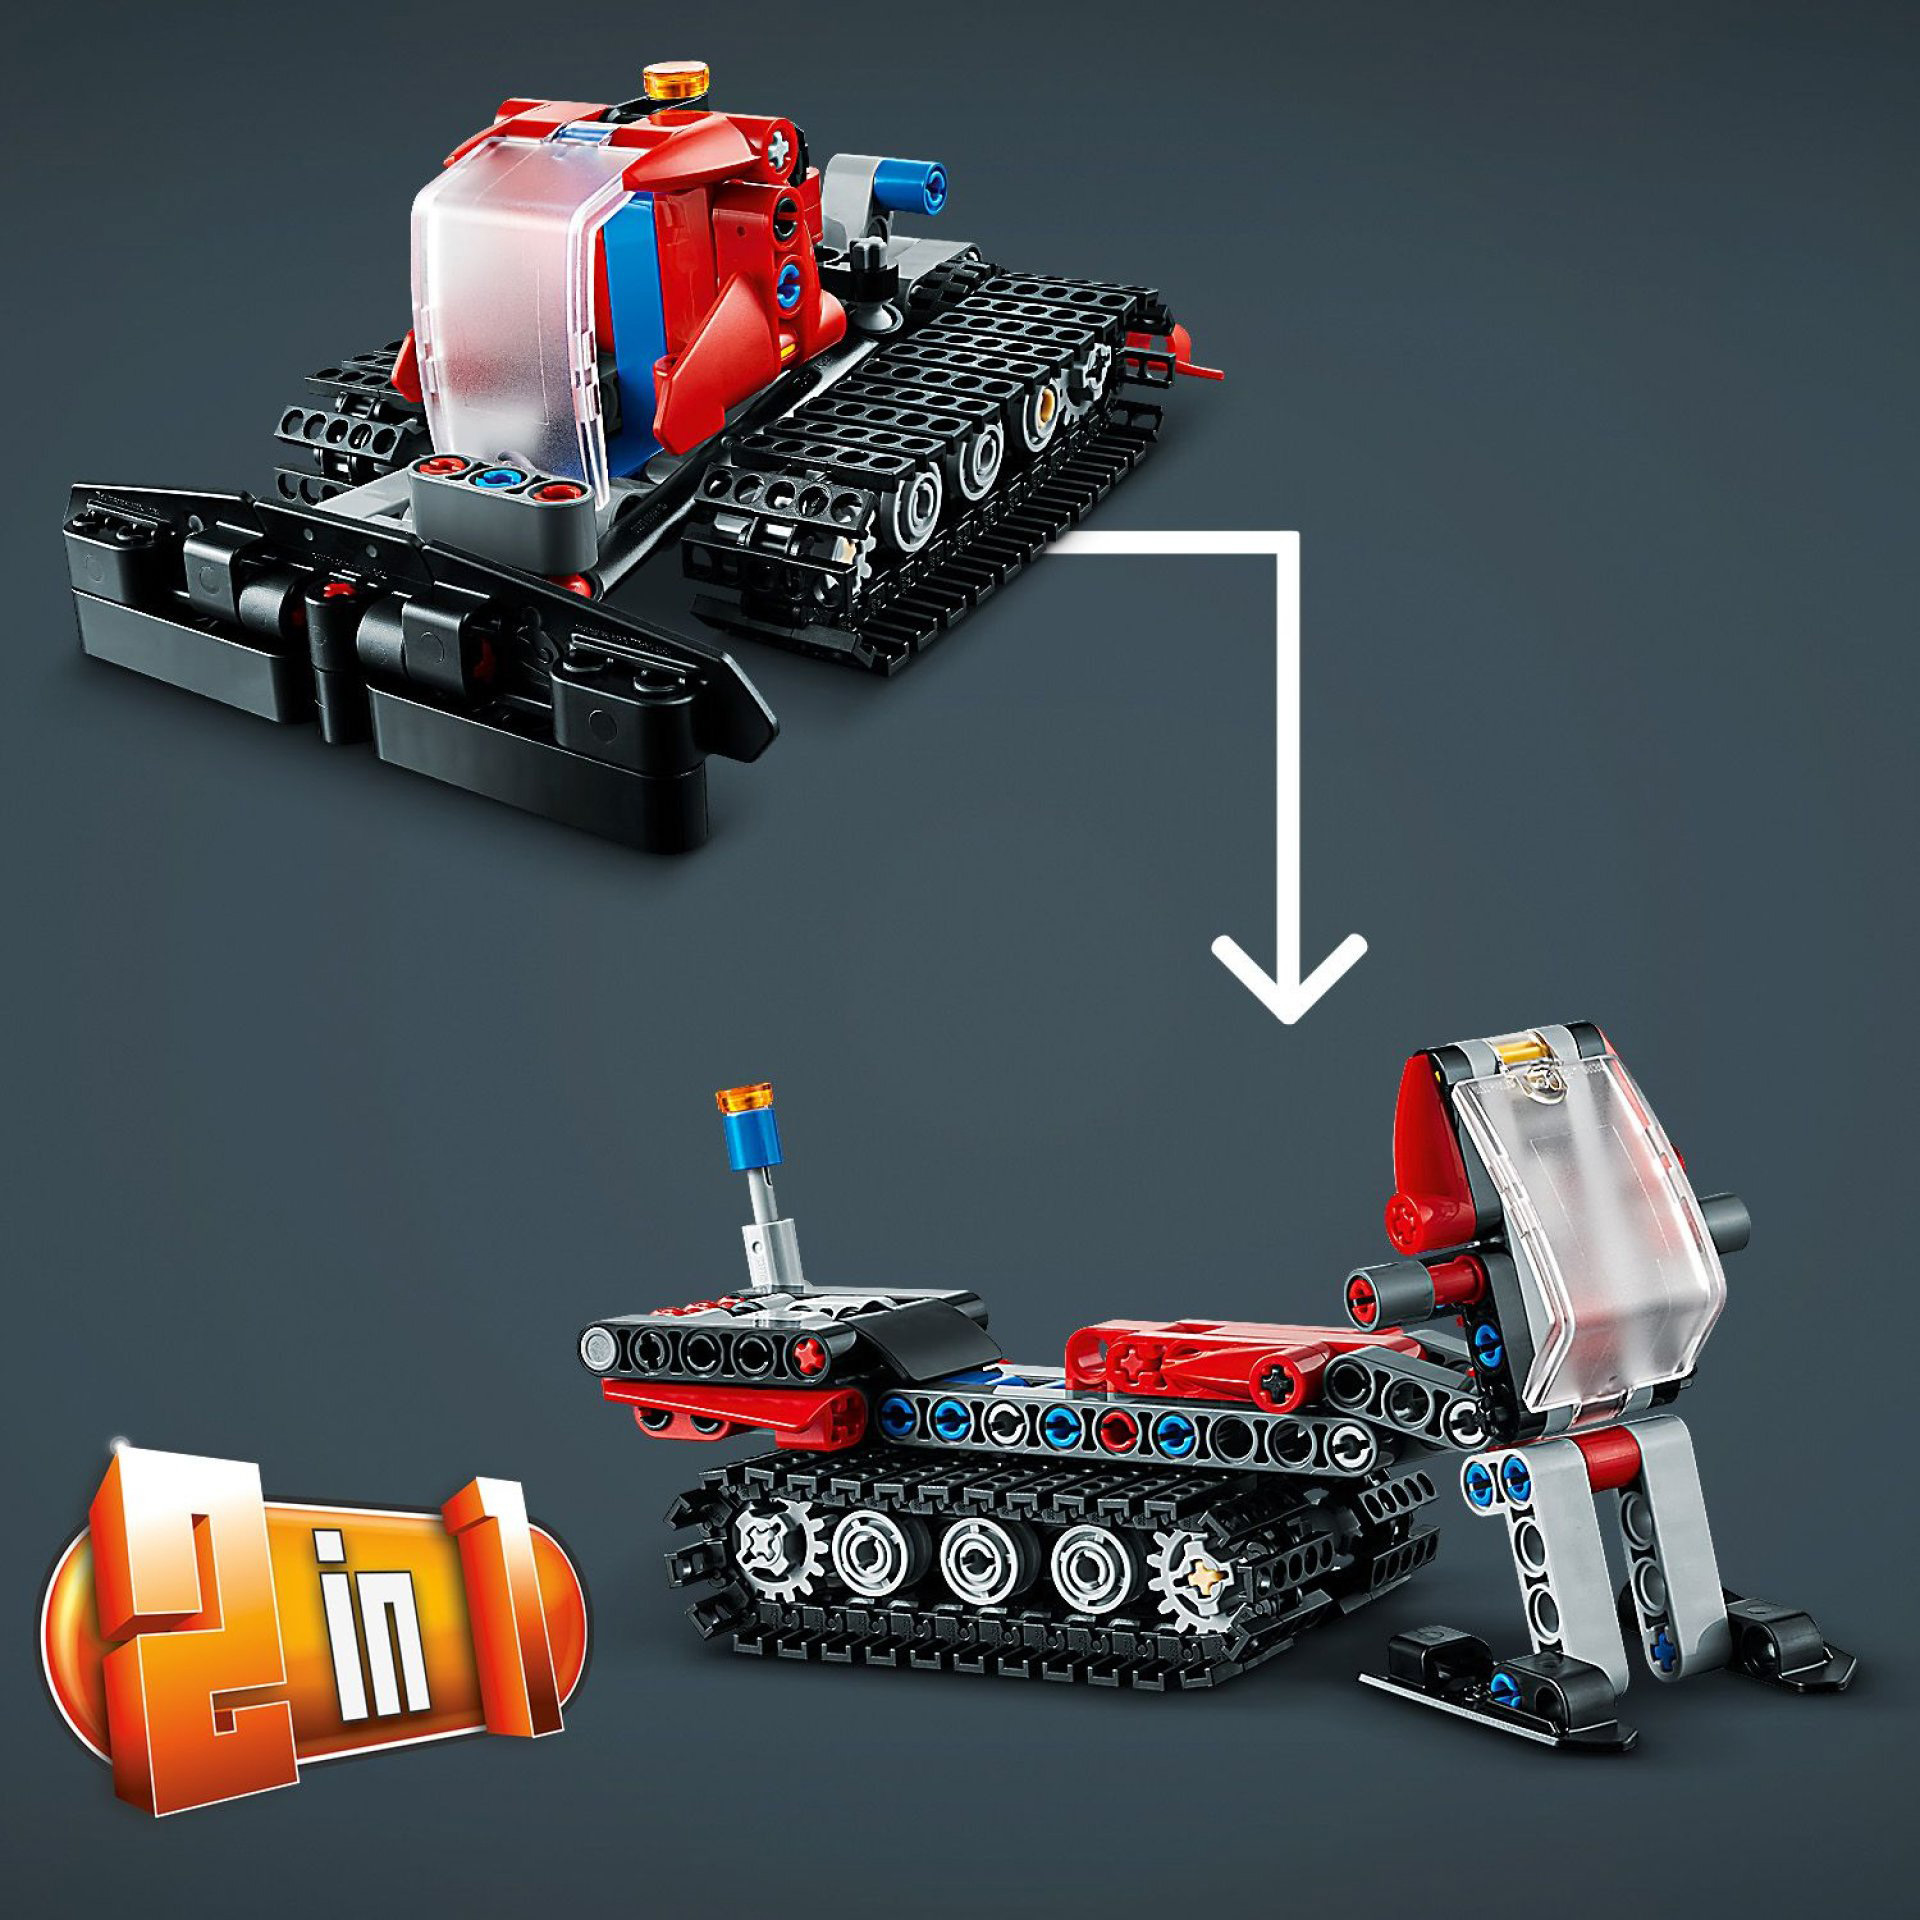 LEGO 42148 Technic Gatto delle Nevi, Set 2 in 1 con Motoslitta e Spazzaneve Gioc 42148, , large